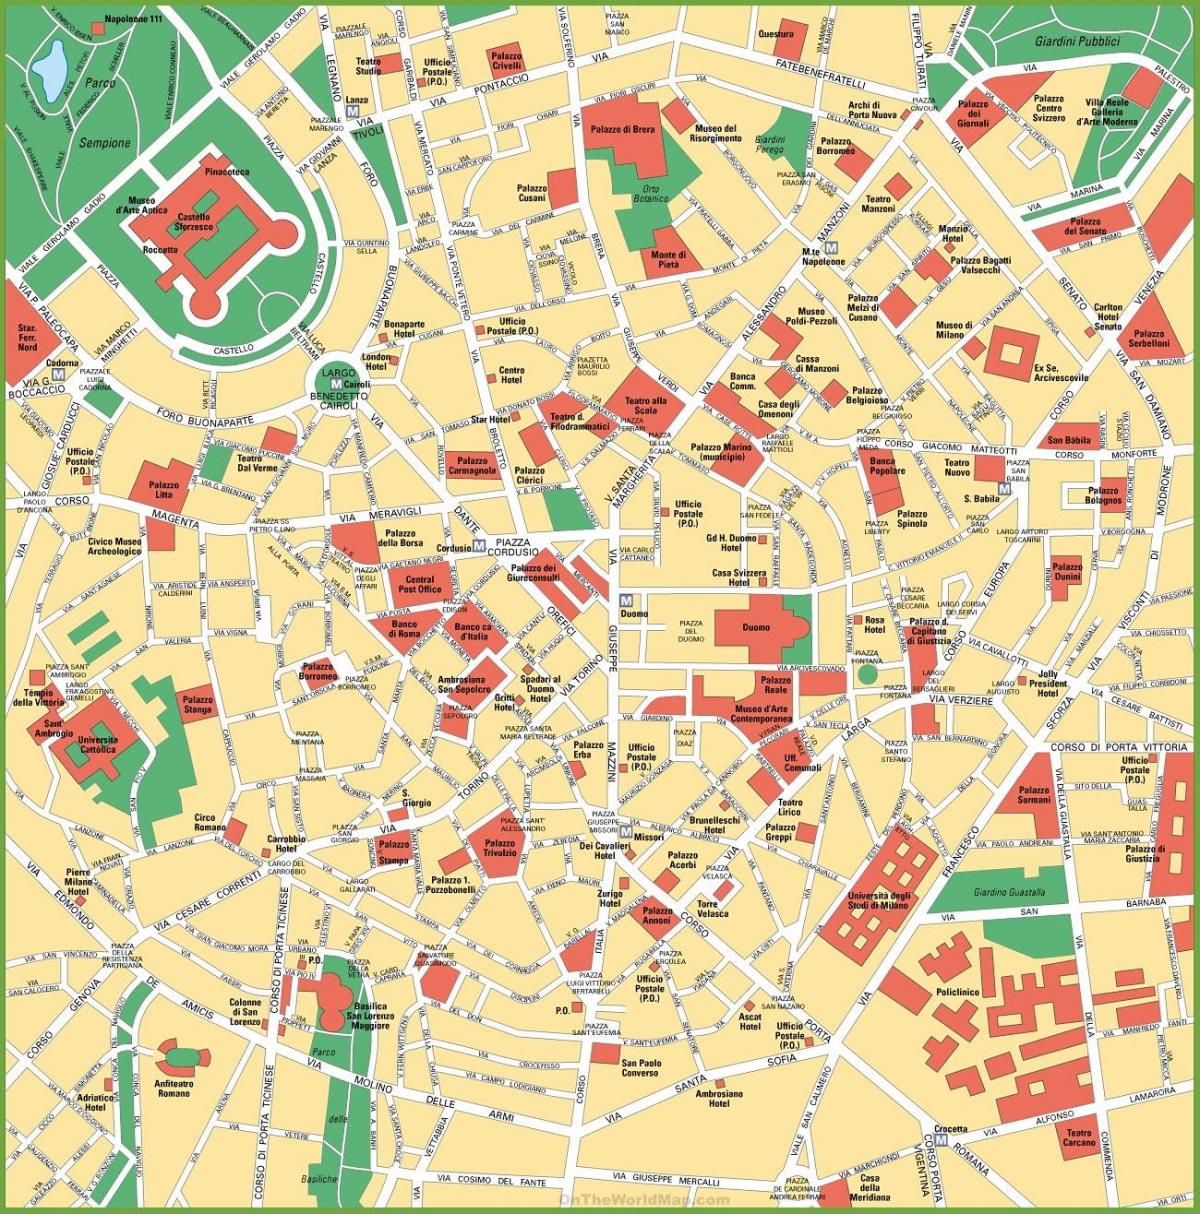 mappa della città di milano, italia